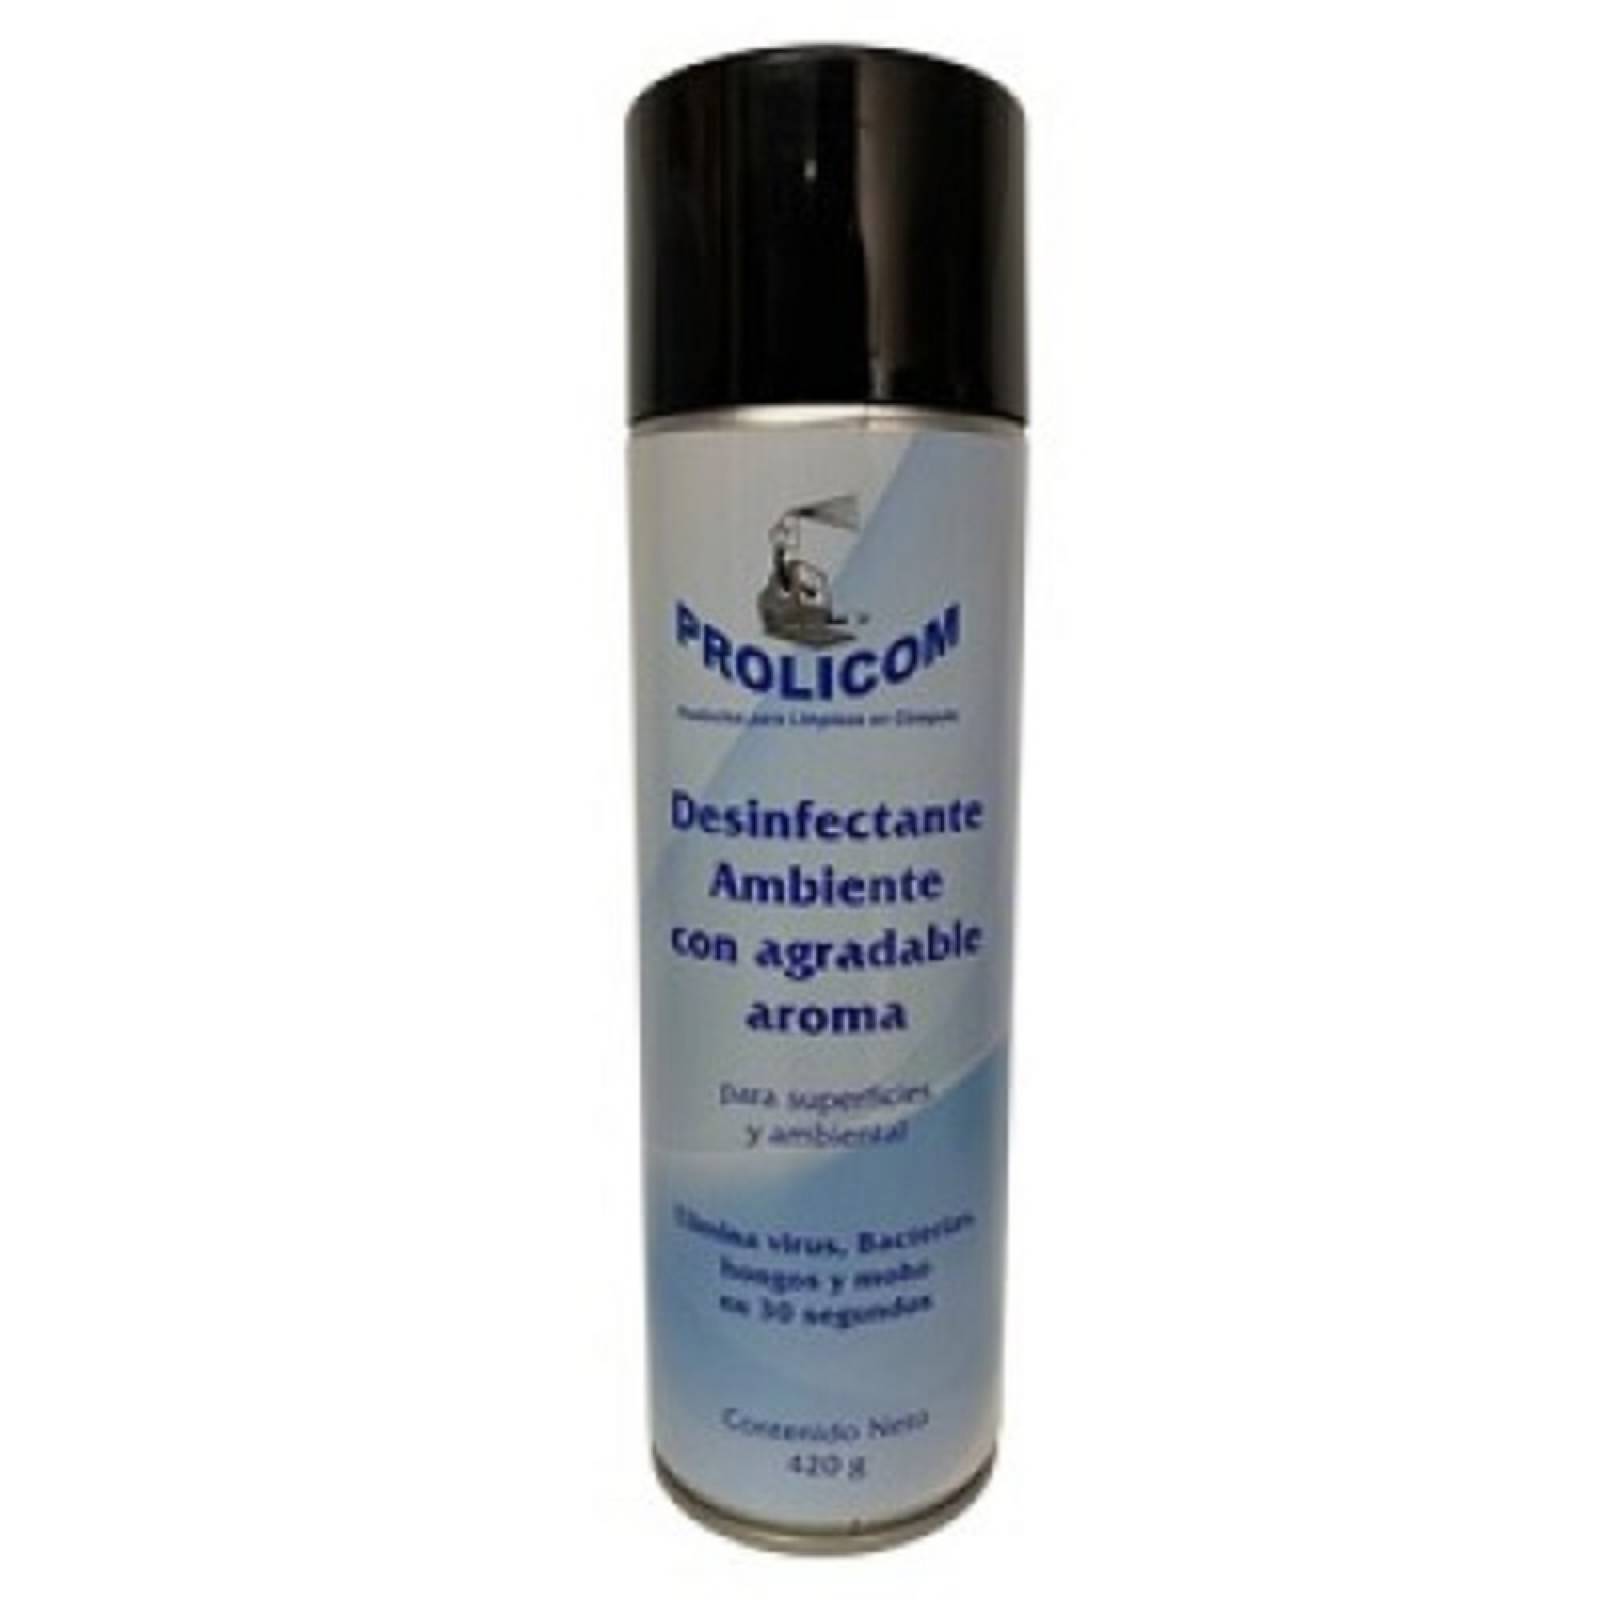 Sanitizante Prolicom Desinfectante Ambiental 420 g Aroma